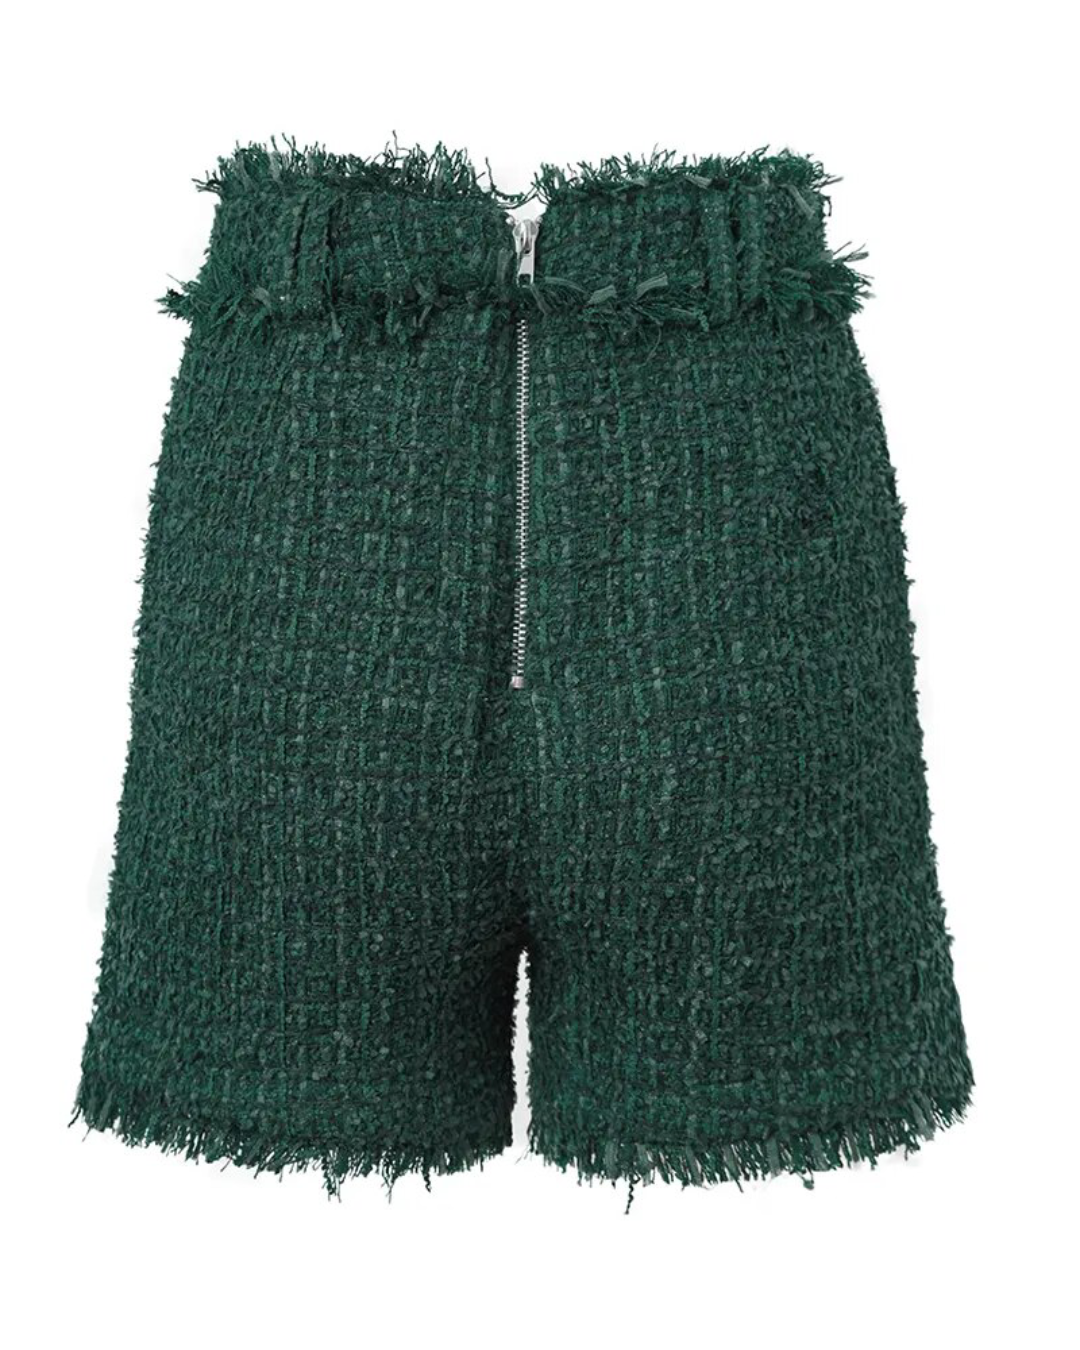 Woven Tweed Shorts   